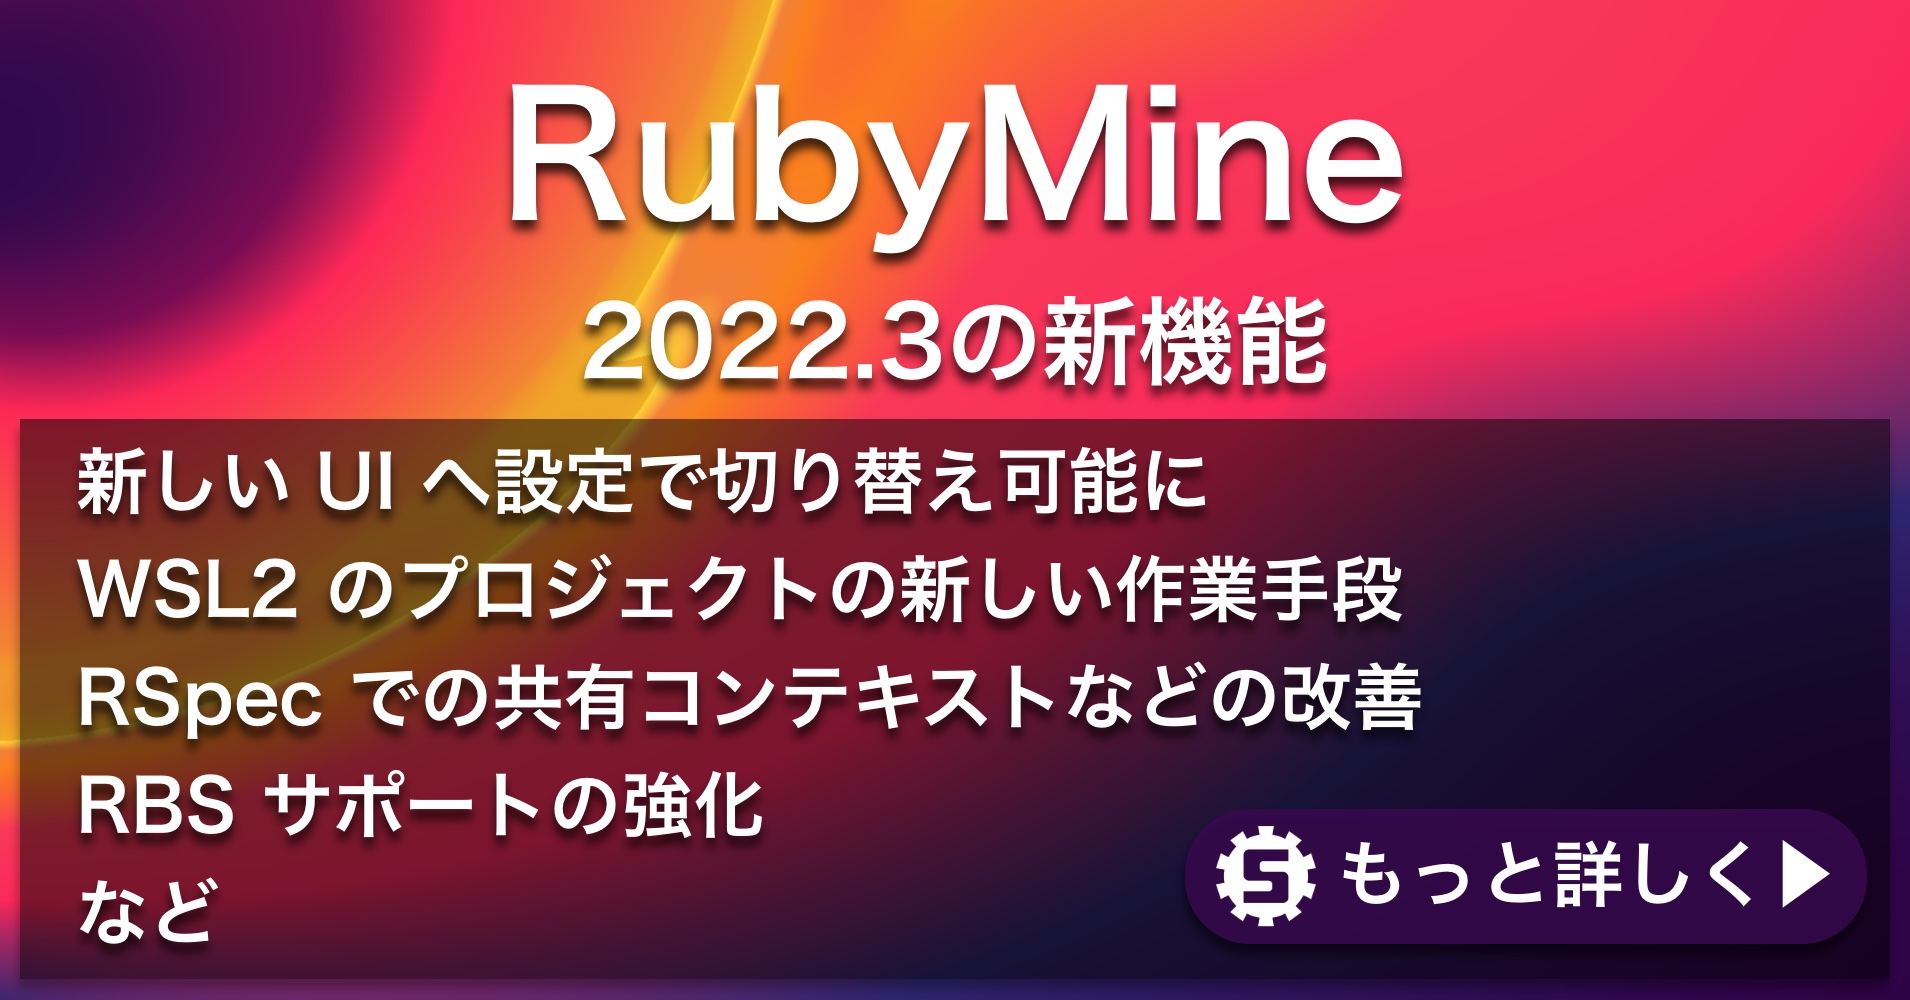 RubyMine 2022.3の新機能